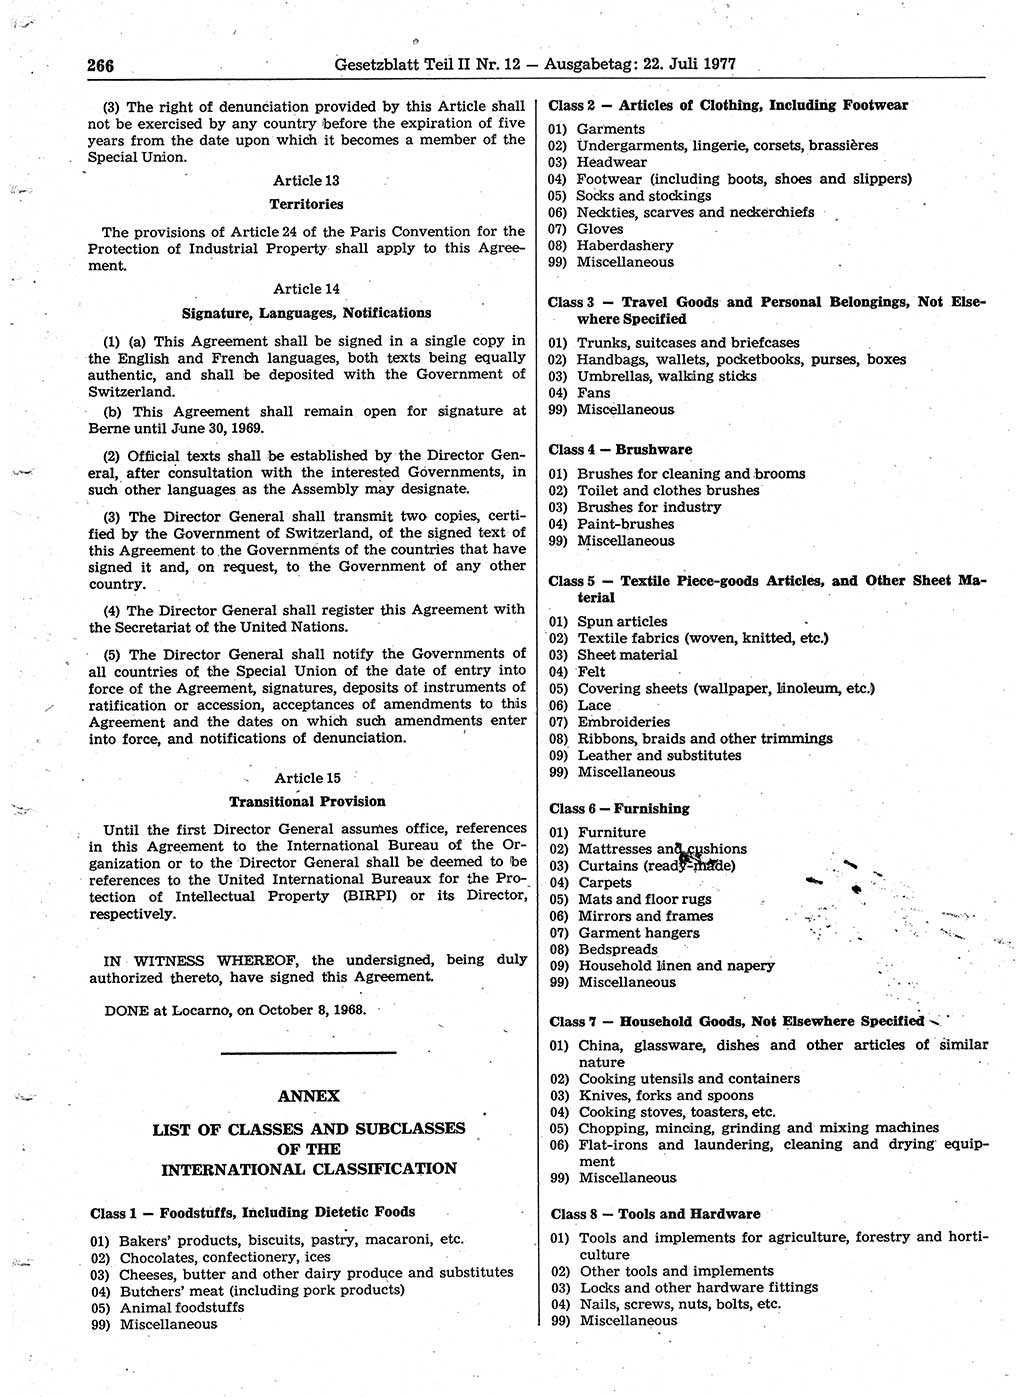 Gesetzblatt (GBl.) der Deutschen Demokratischen Republik (DDR) Teil ⅠⅠ 1977, Seite 266 (GBl. DDR ⅠⅠ 1977, S. 266)